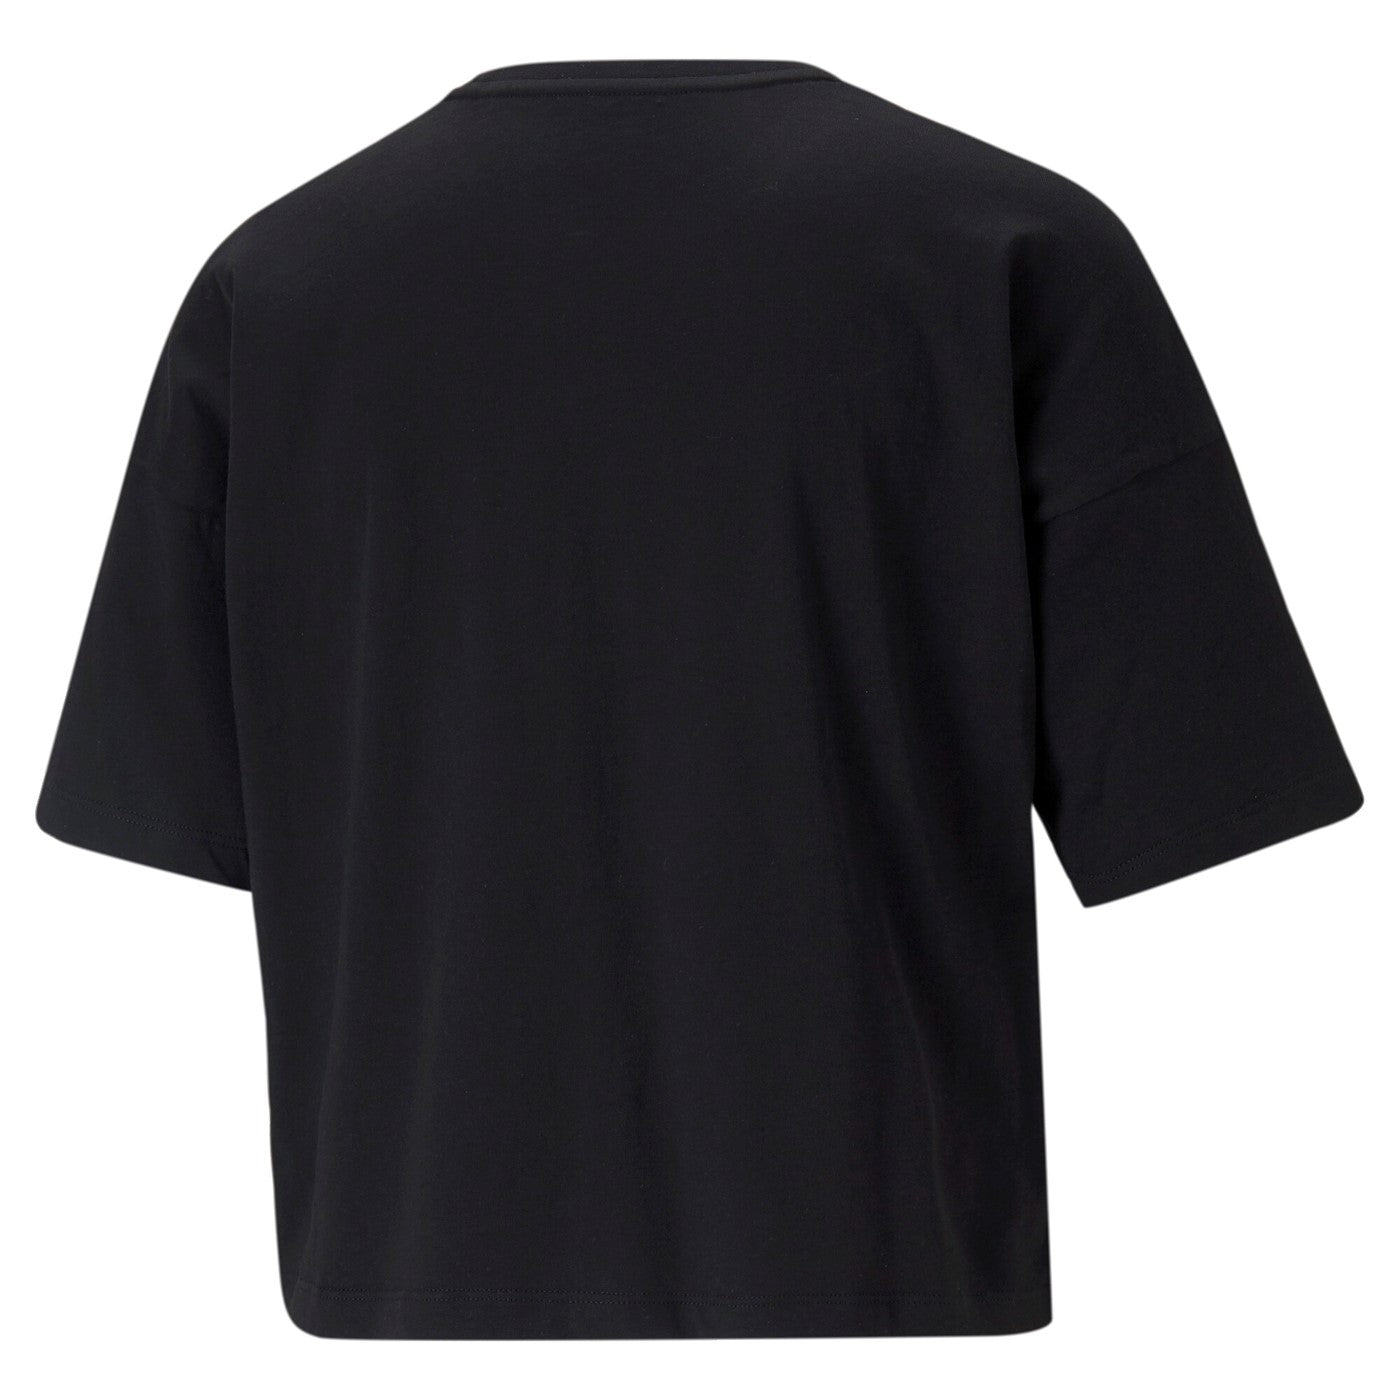 Puma maglietta manica corta da donna ESS Cropped Logo 586866 01 nero